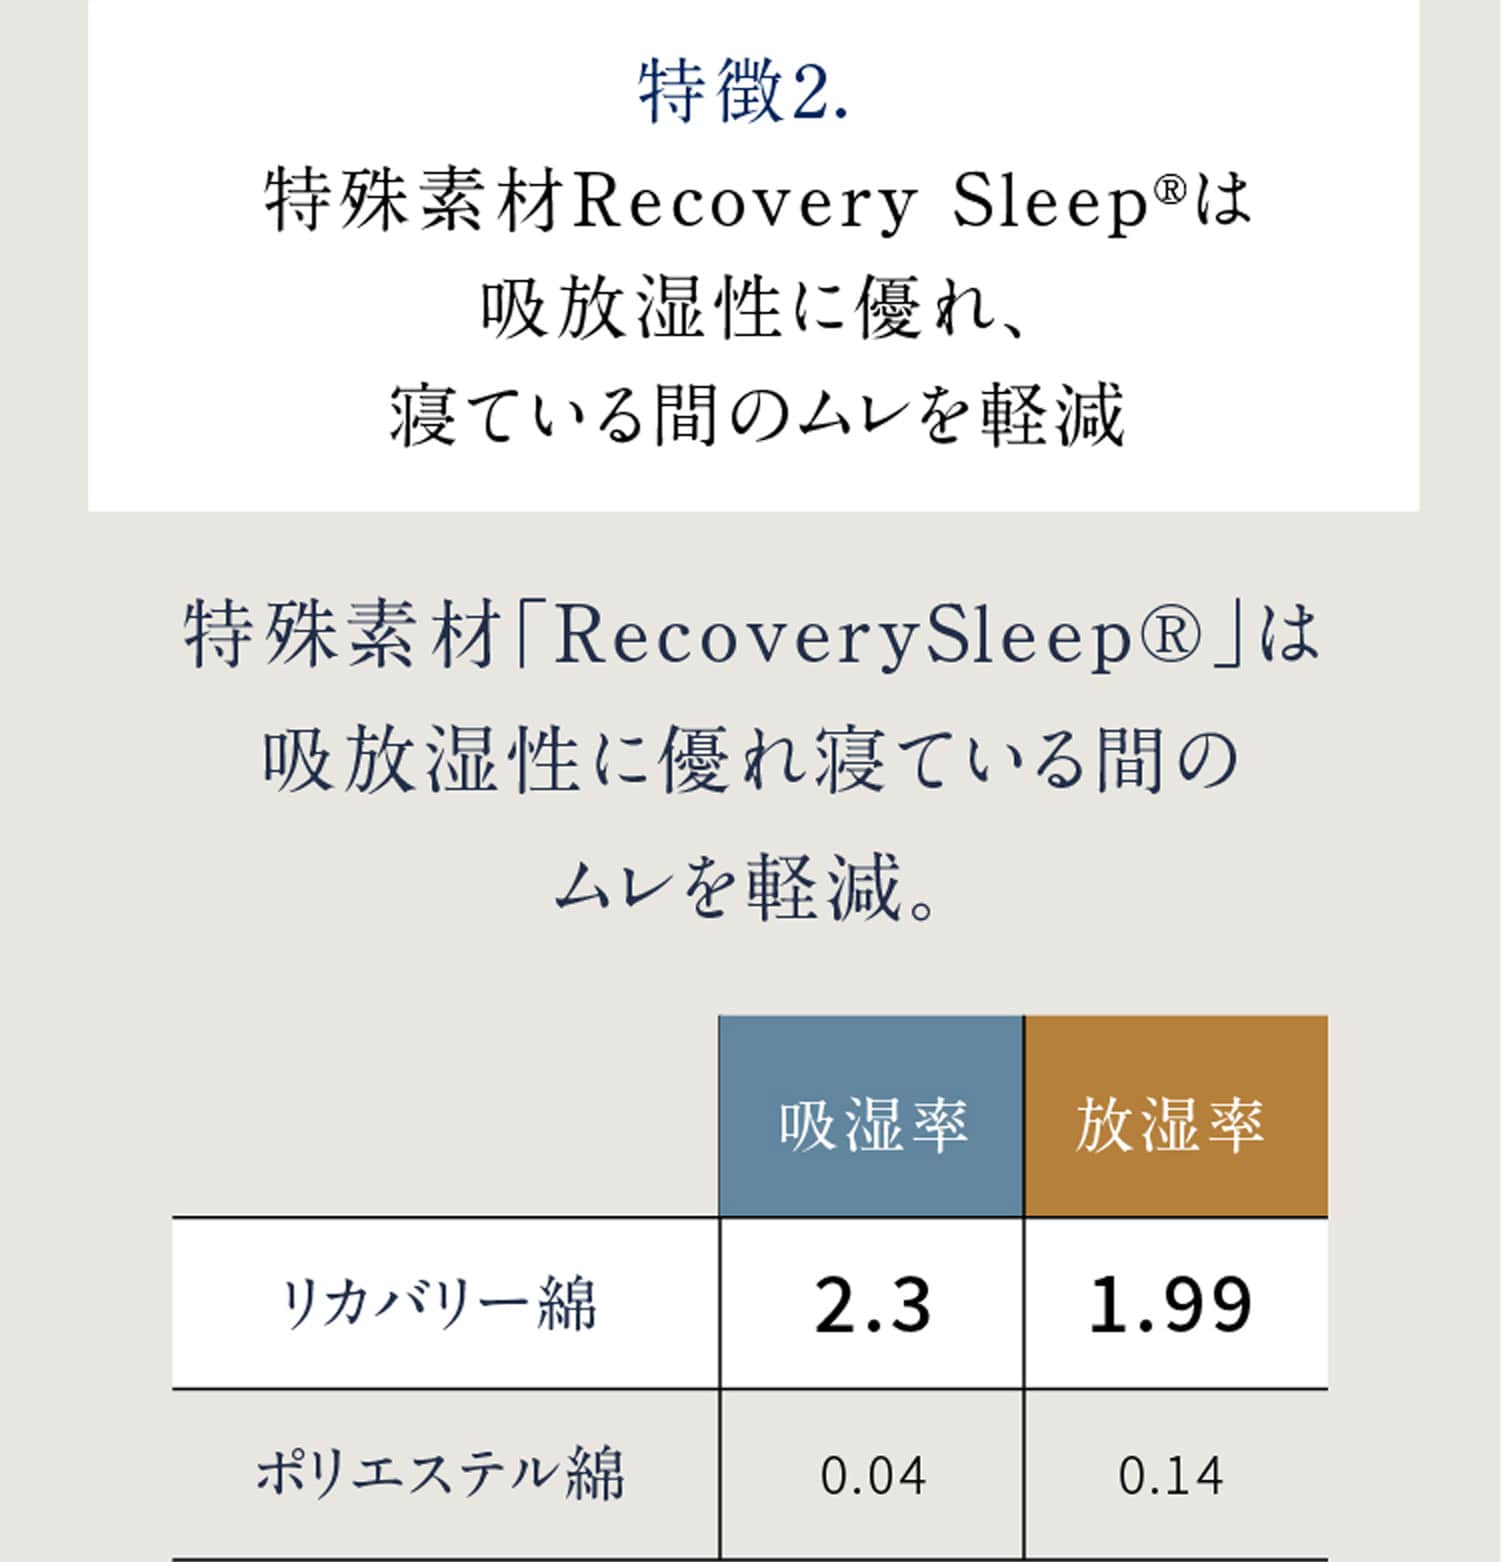 特徴2. 特殊素材Recovery Sleep®は吸放湿性に優れ、寝ている間のムレを軽減 特殊素材「RecoverySleep®」は吸放湿性に優れ寝ている間のムレを軽減。